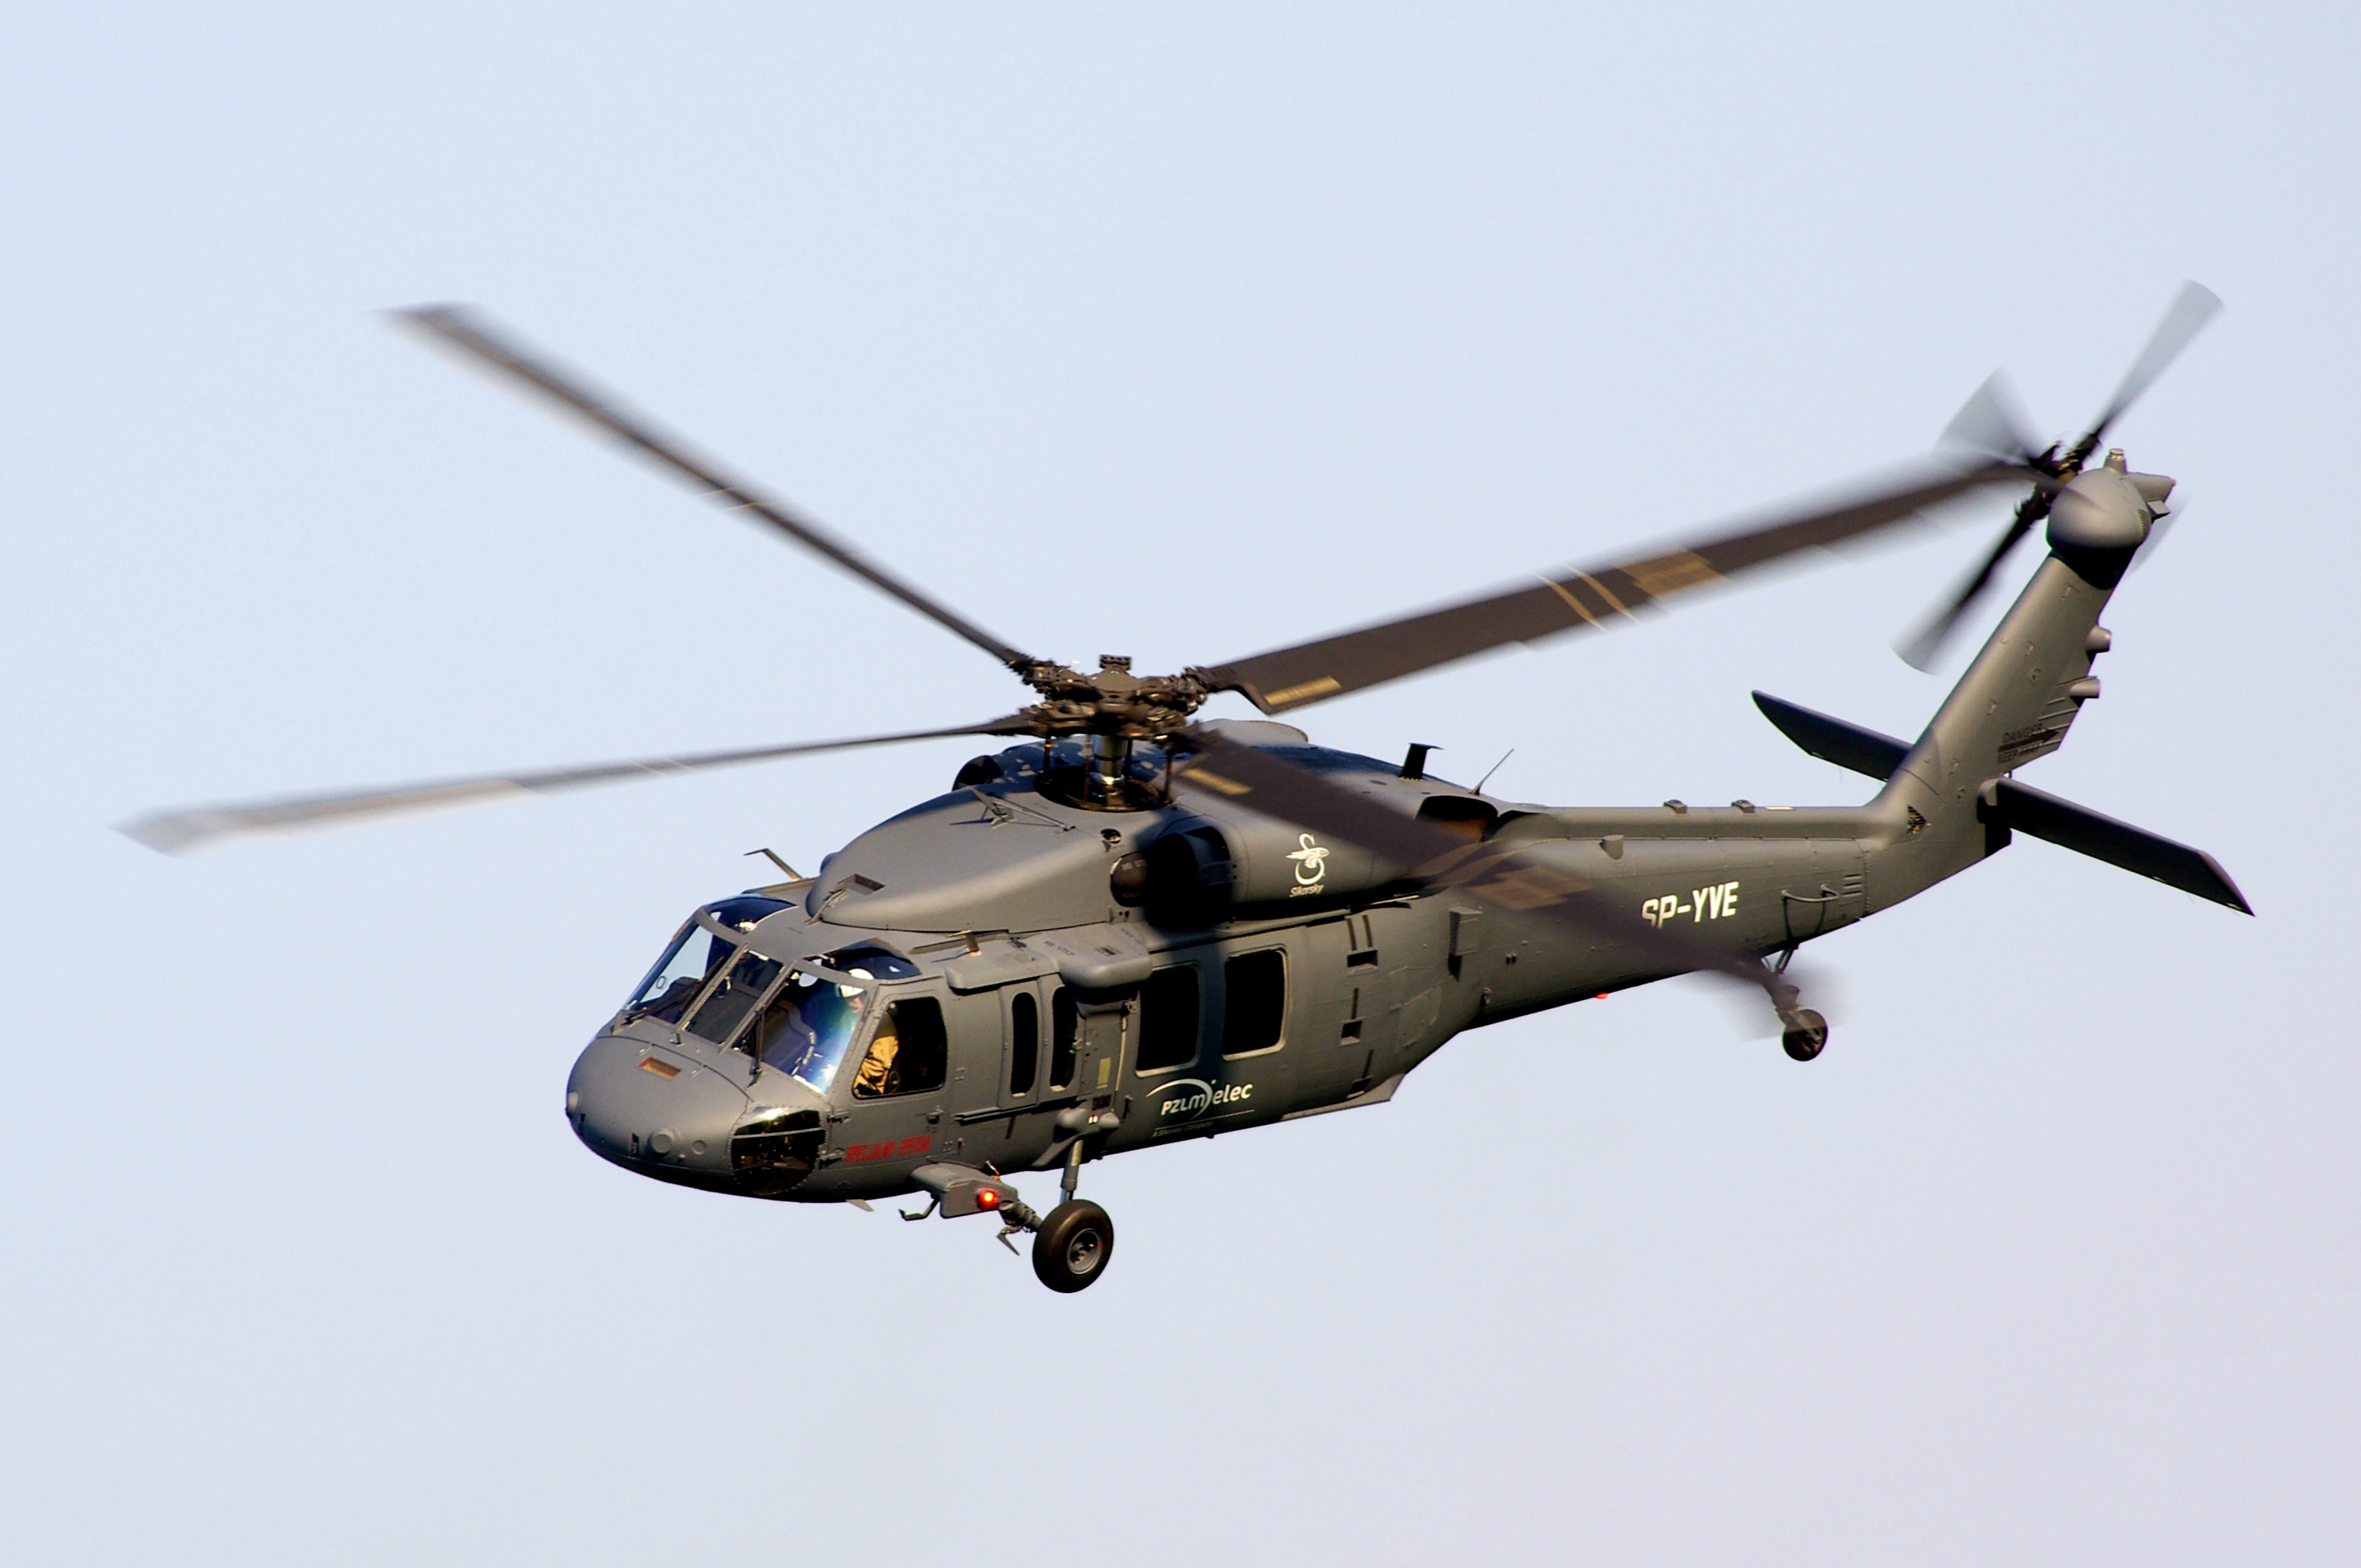 L'Albania ha ricevuto in servizio due elicotteri UH-60 Black Hawk statunitensi.